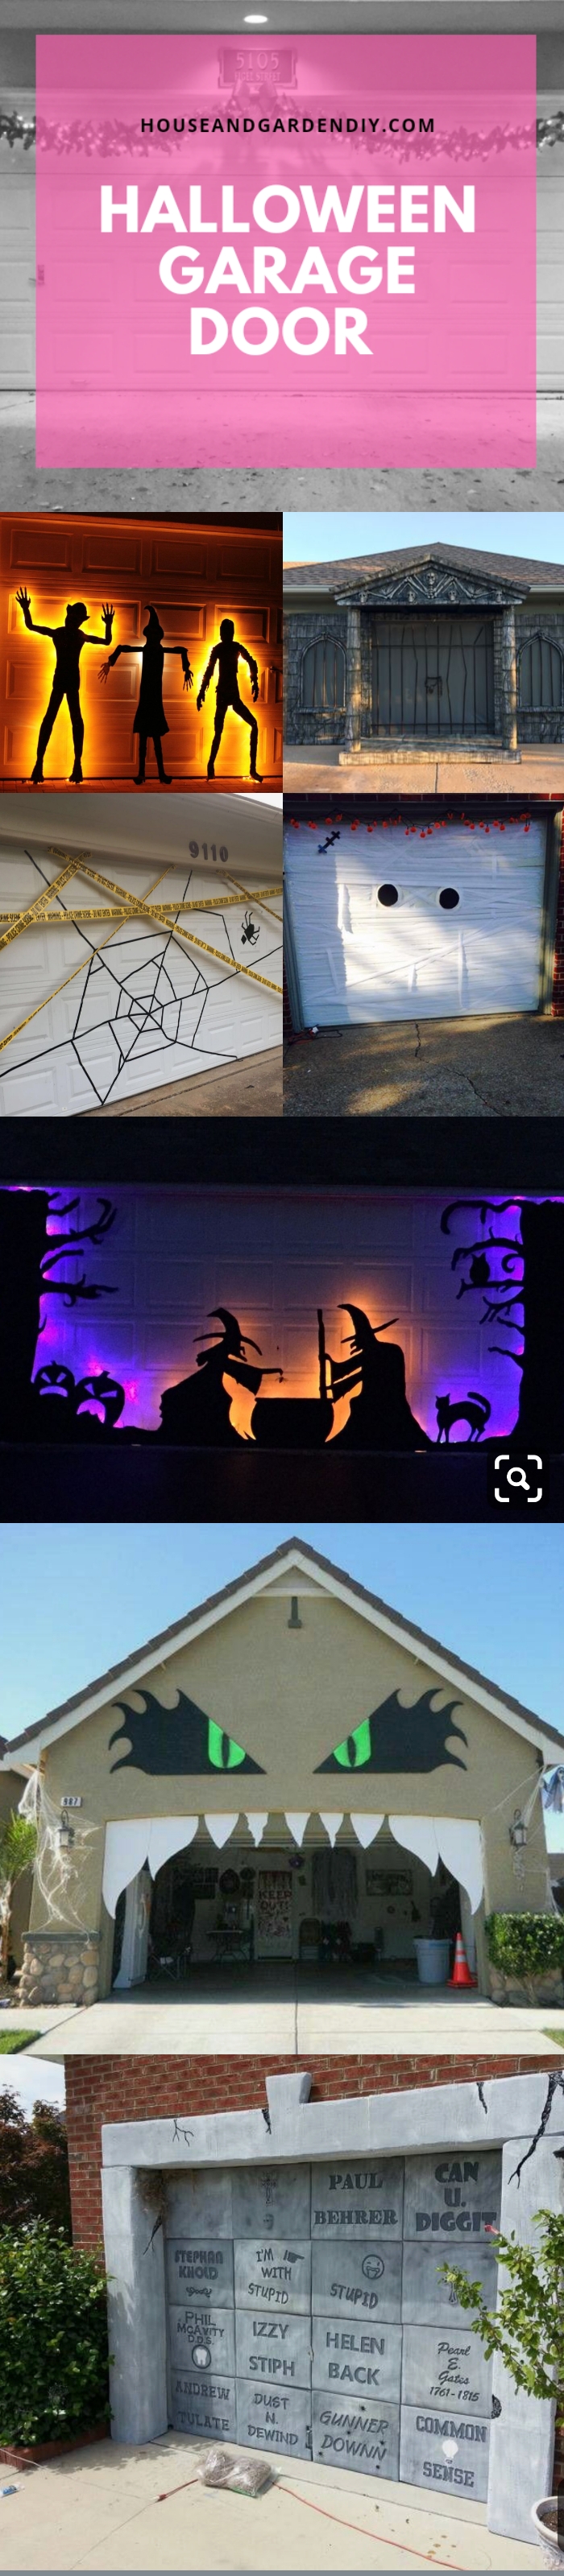 helloween garage door ideas